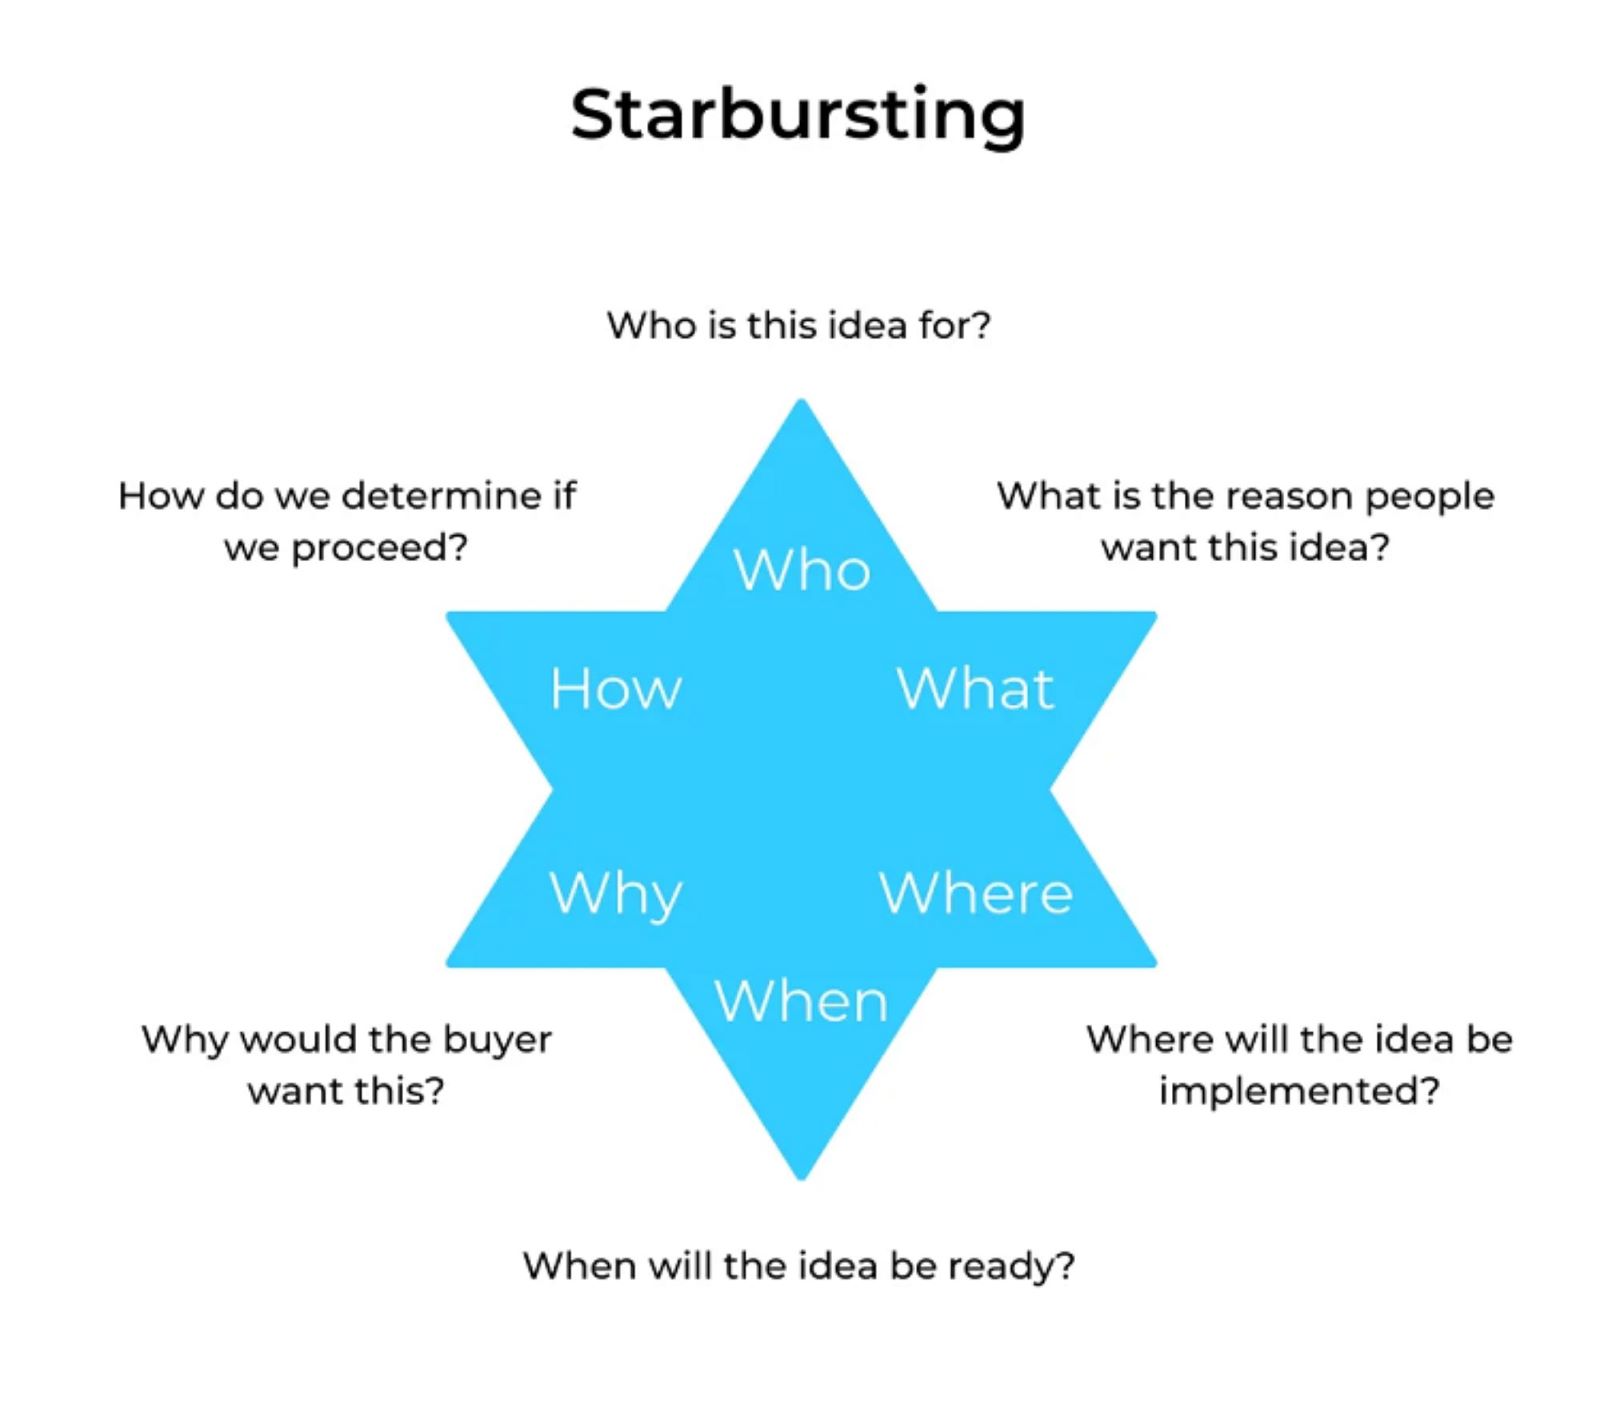 Kỹ thuật Starbursting (đặt câu hỏi) giúp thúc đẩy sự sáng tạo của bạn